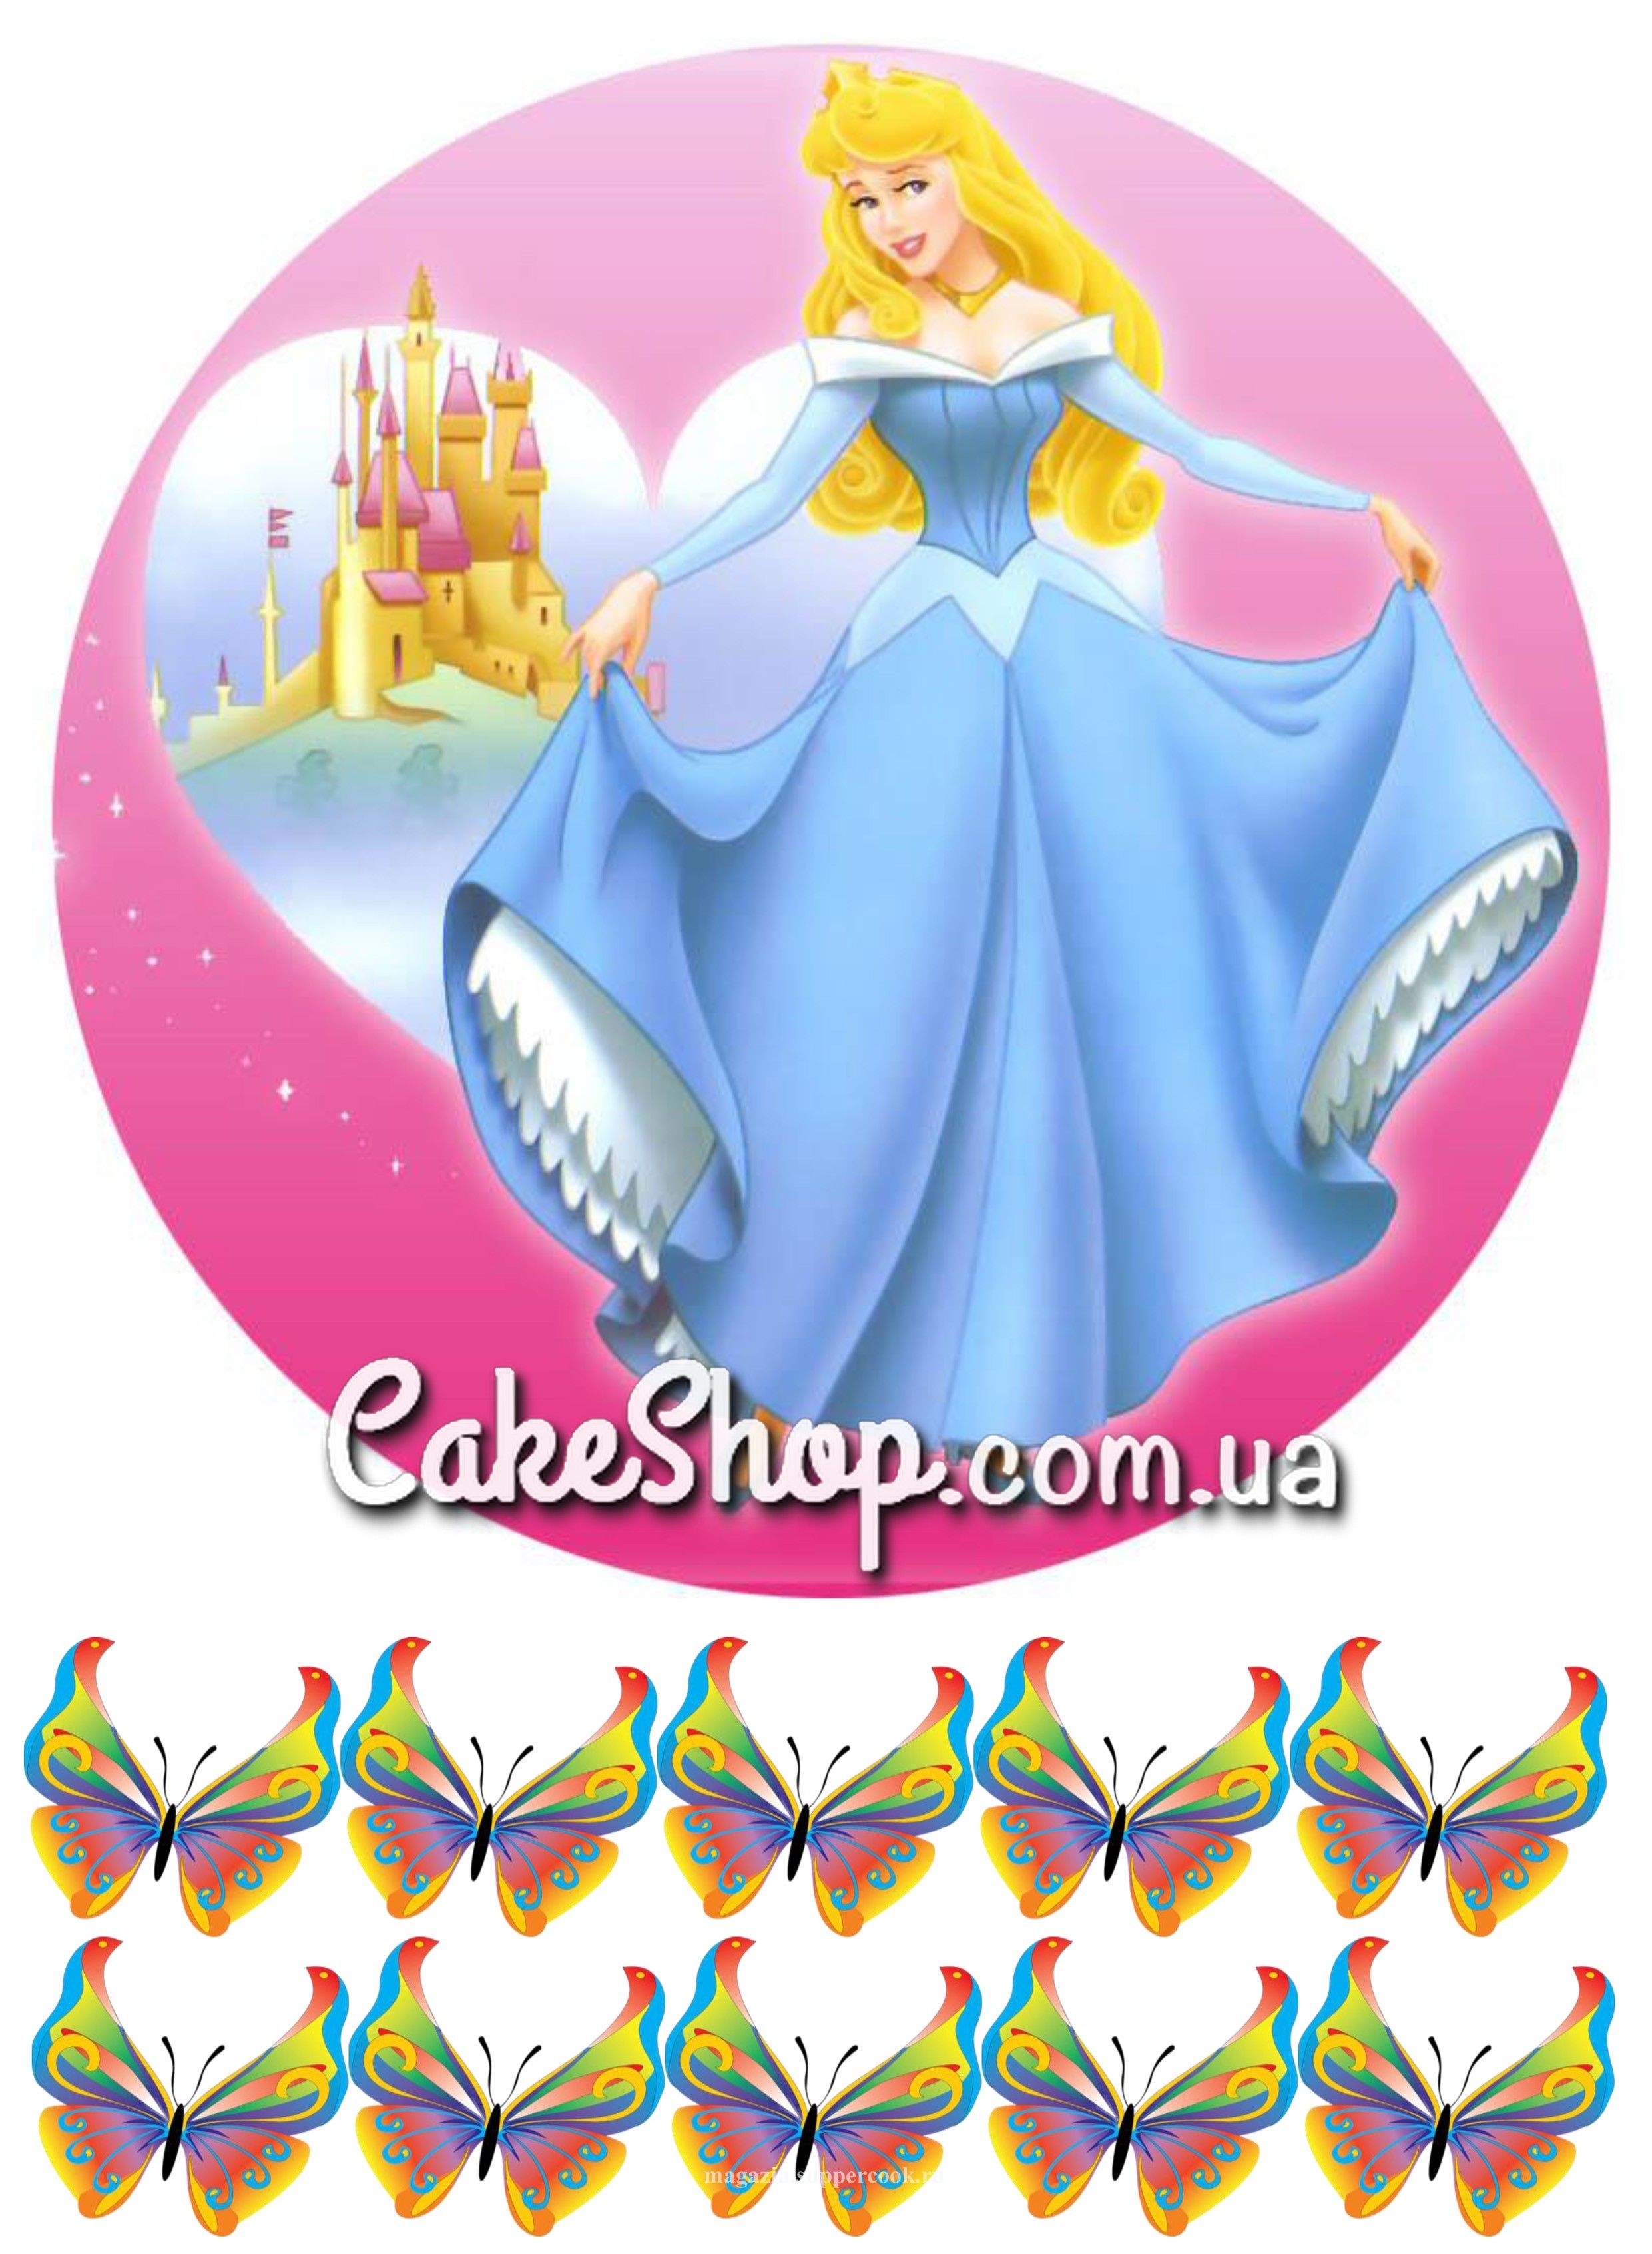 ⋗ Сахарная картинка Принцесса Аврора купить в Украине ➛ CakeShop.com.ua, фото